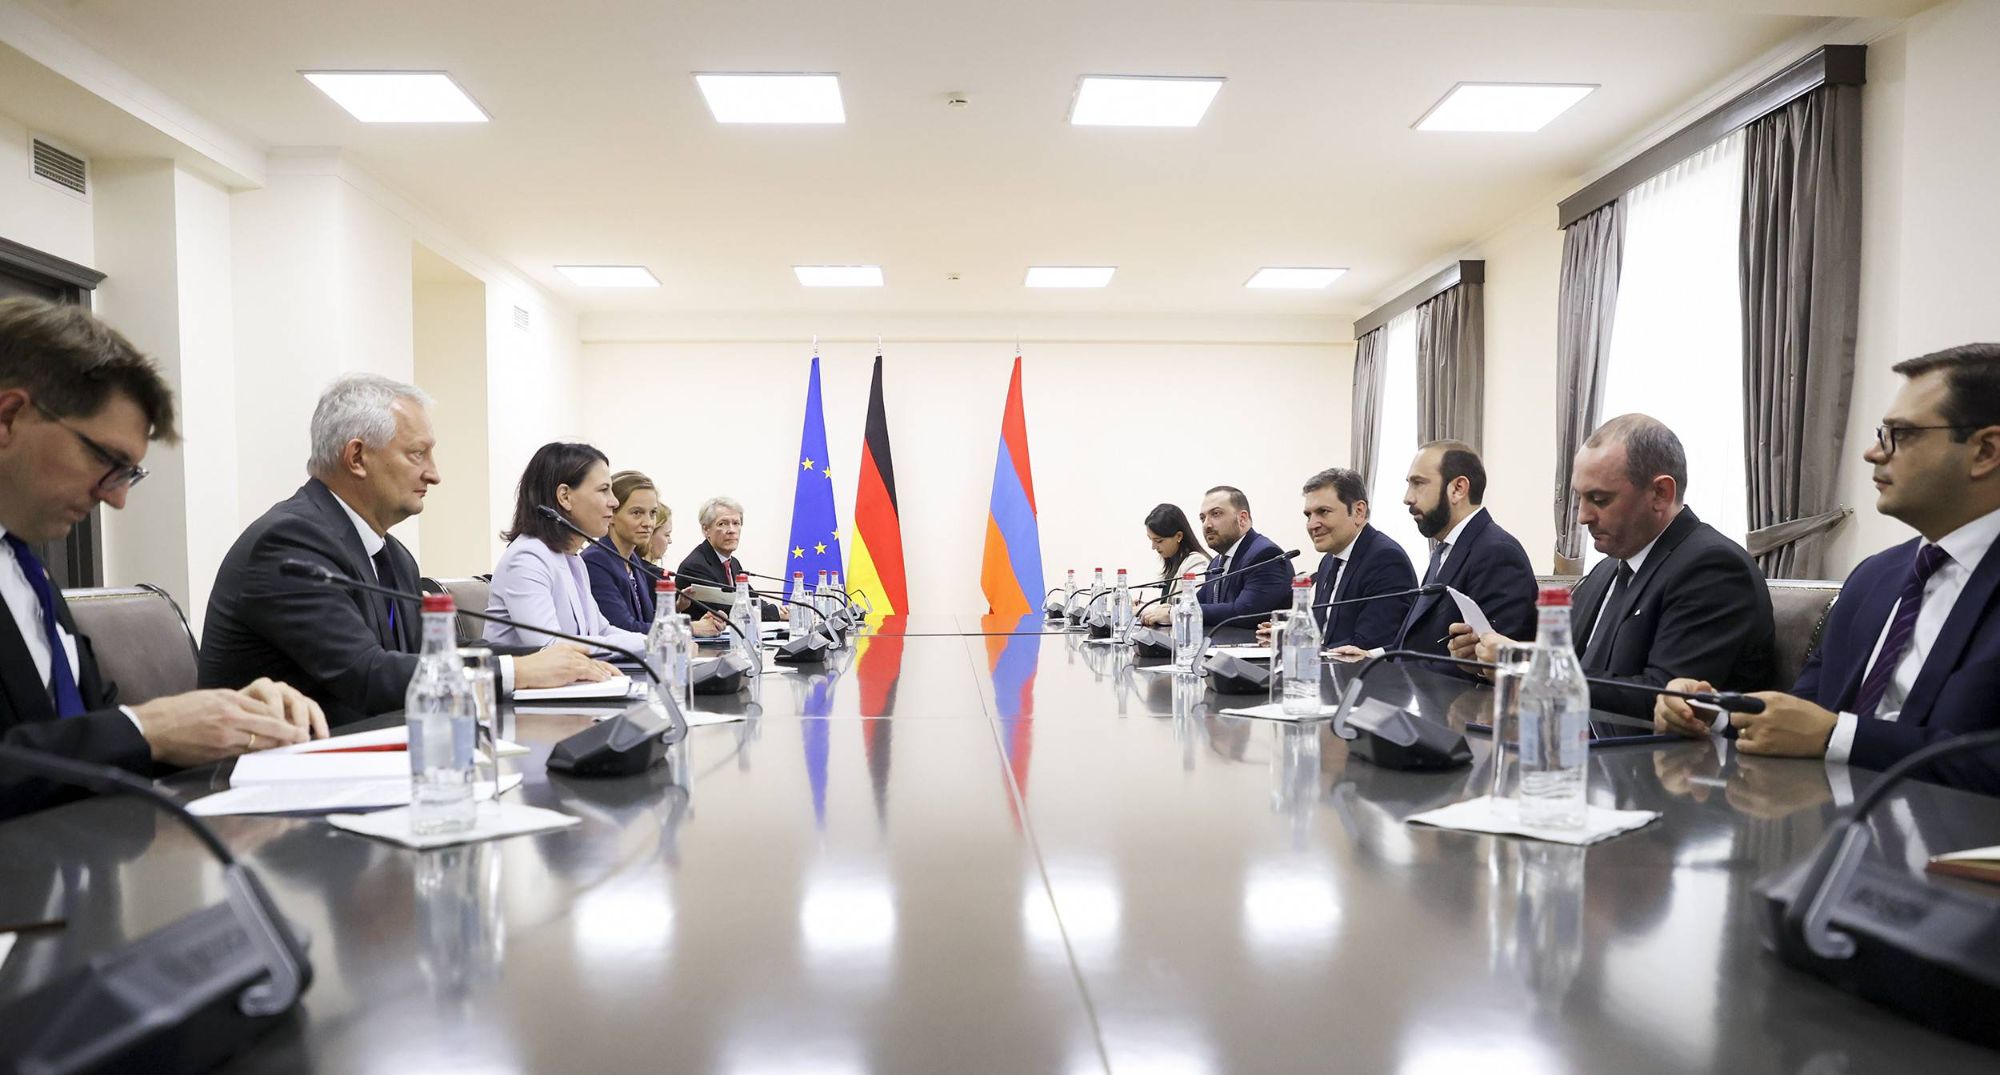 Встреча министров иностранных дел Армении и Германии и их совместная пресс-конференция